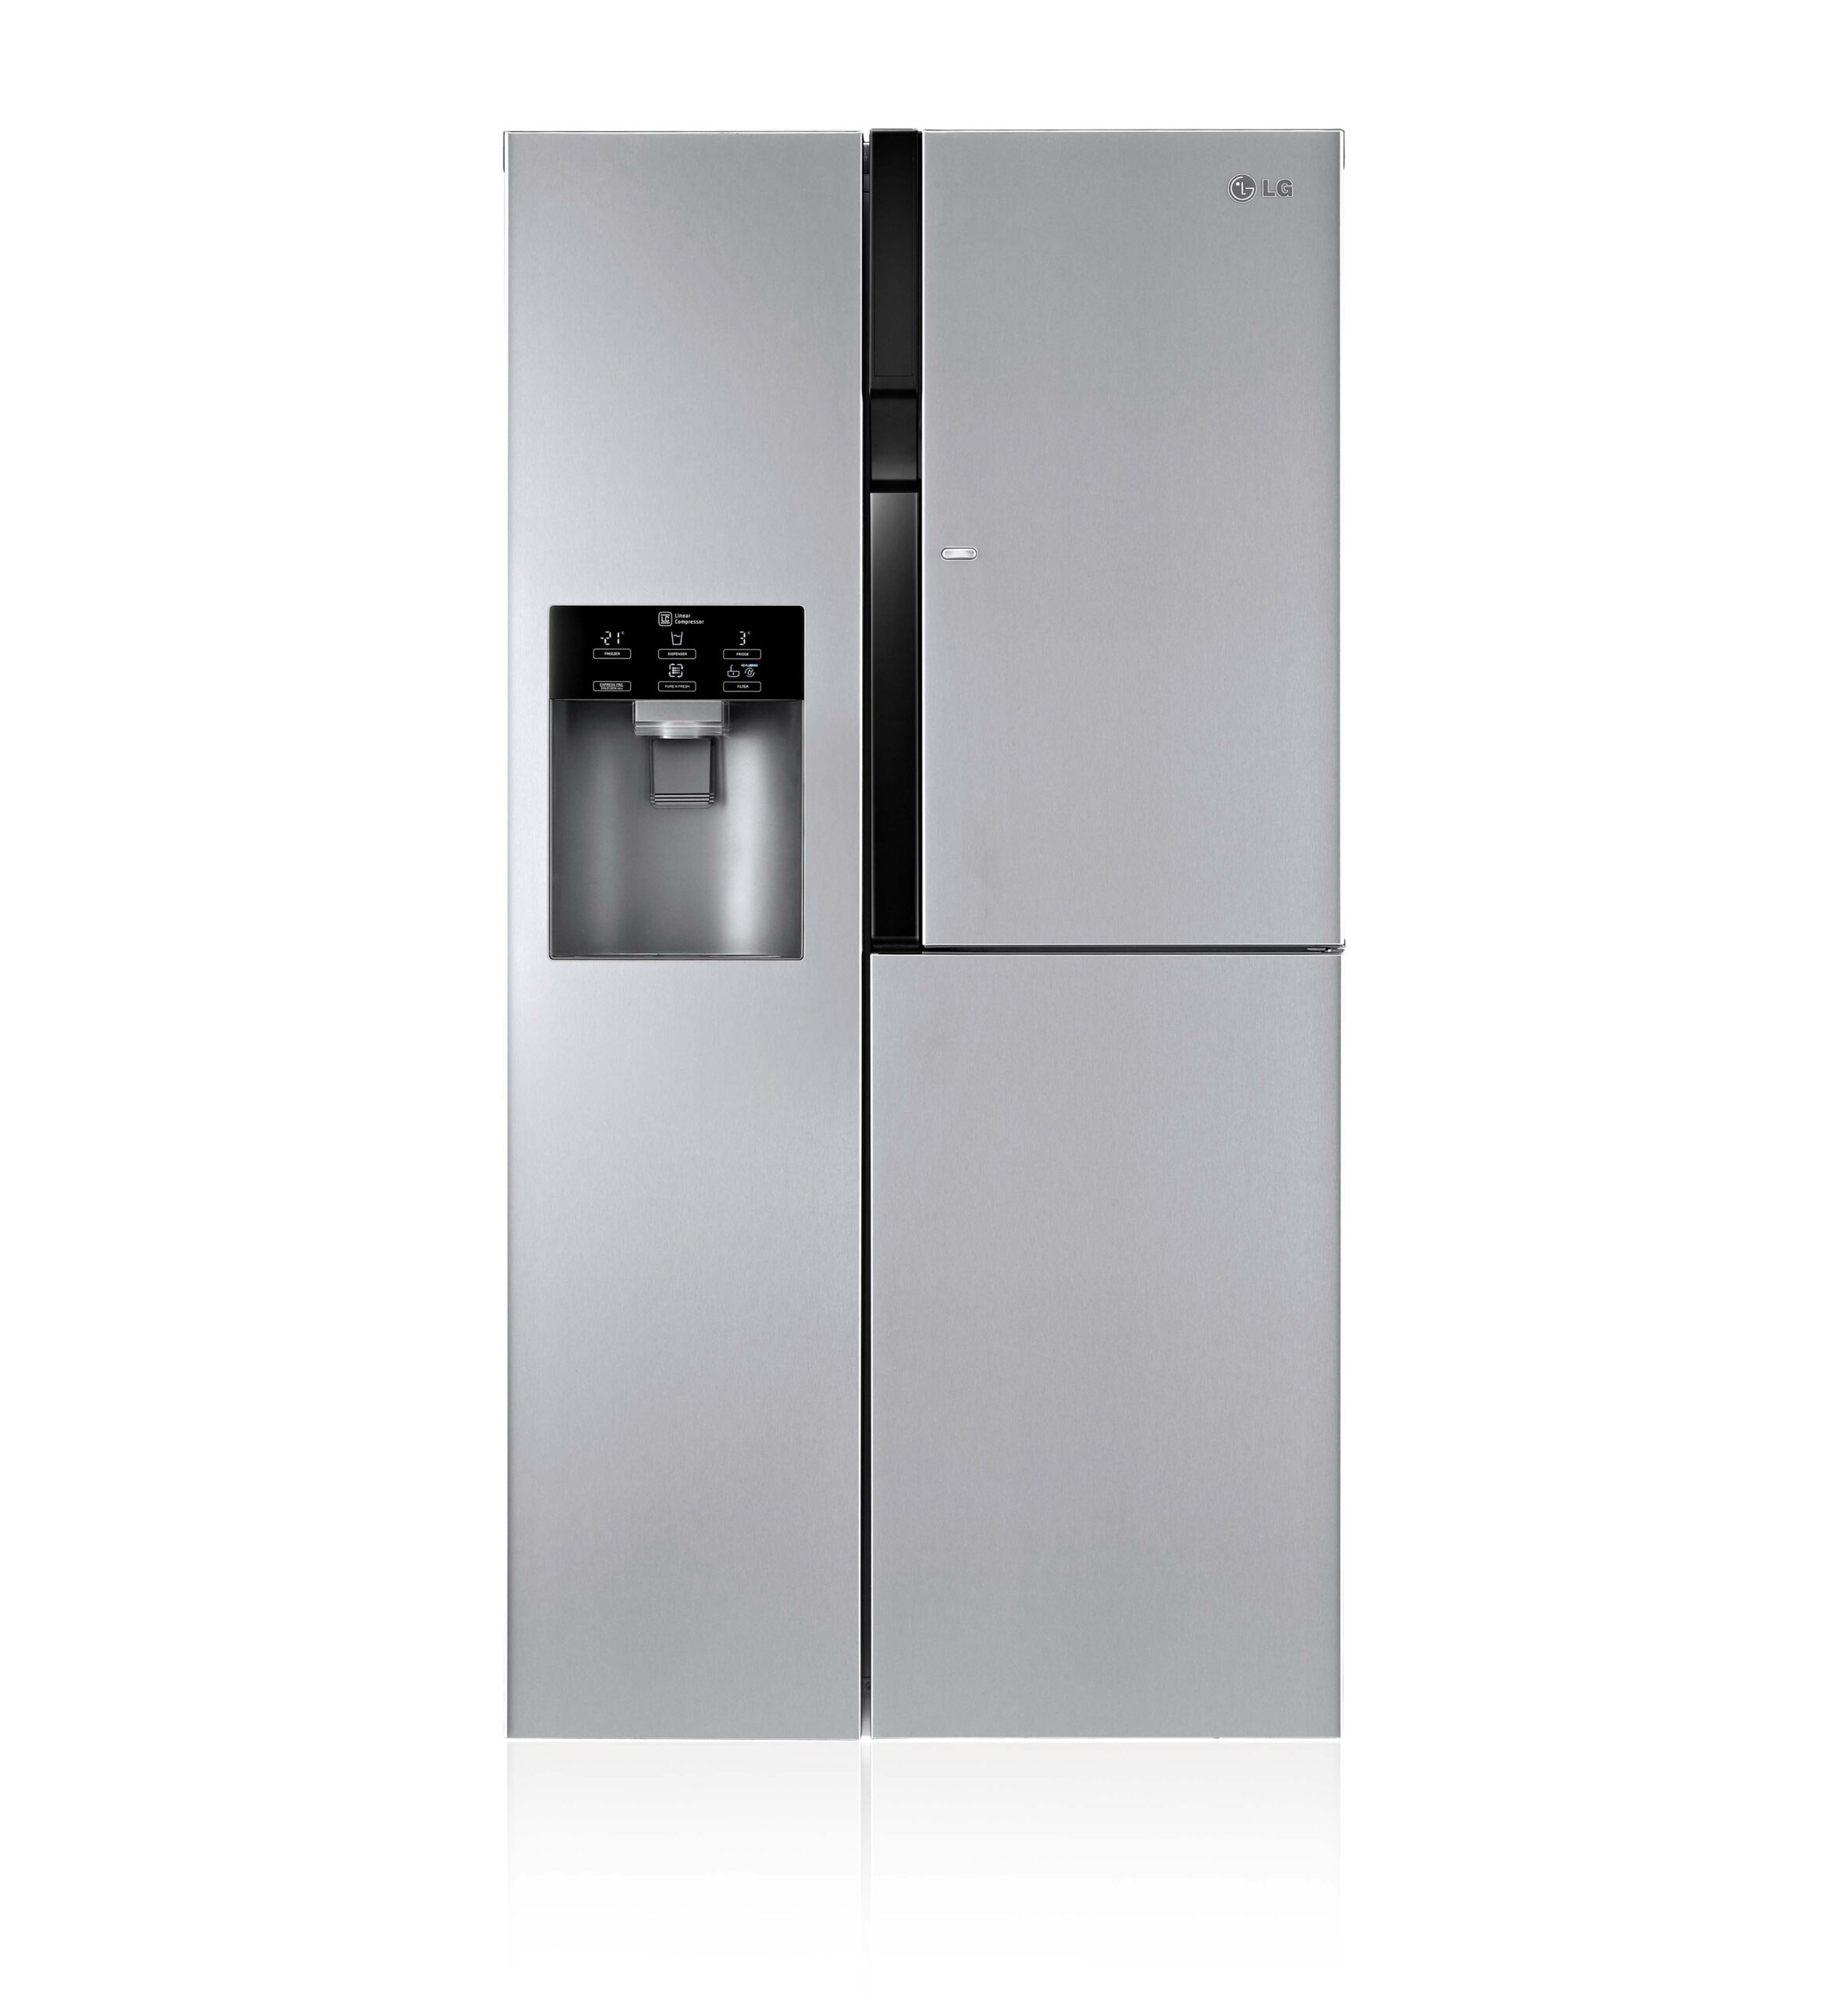 caratteristiche frigoriferi doppia porta